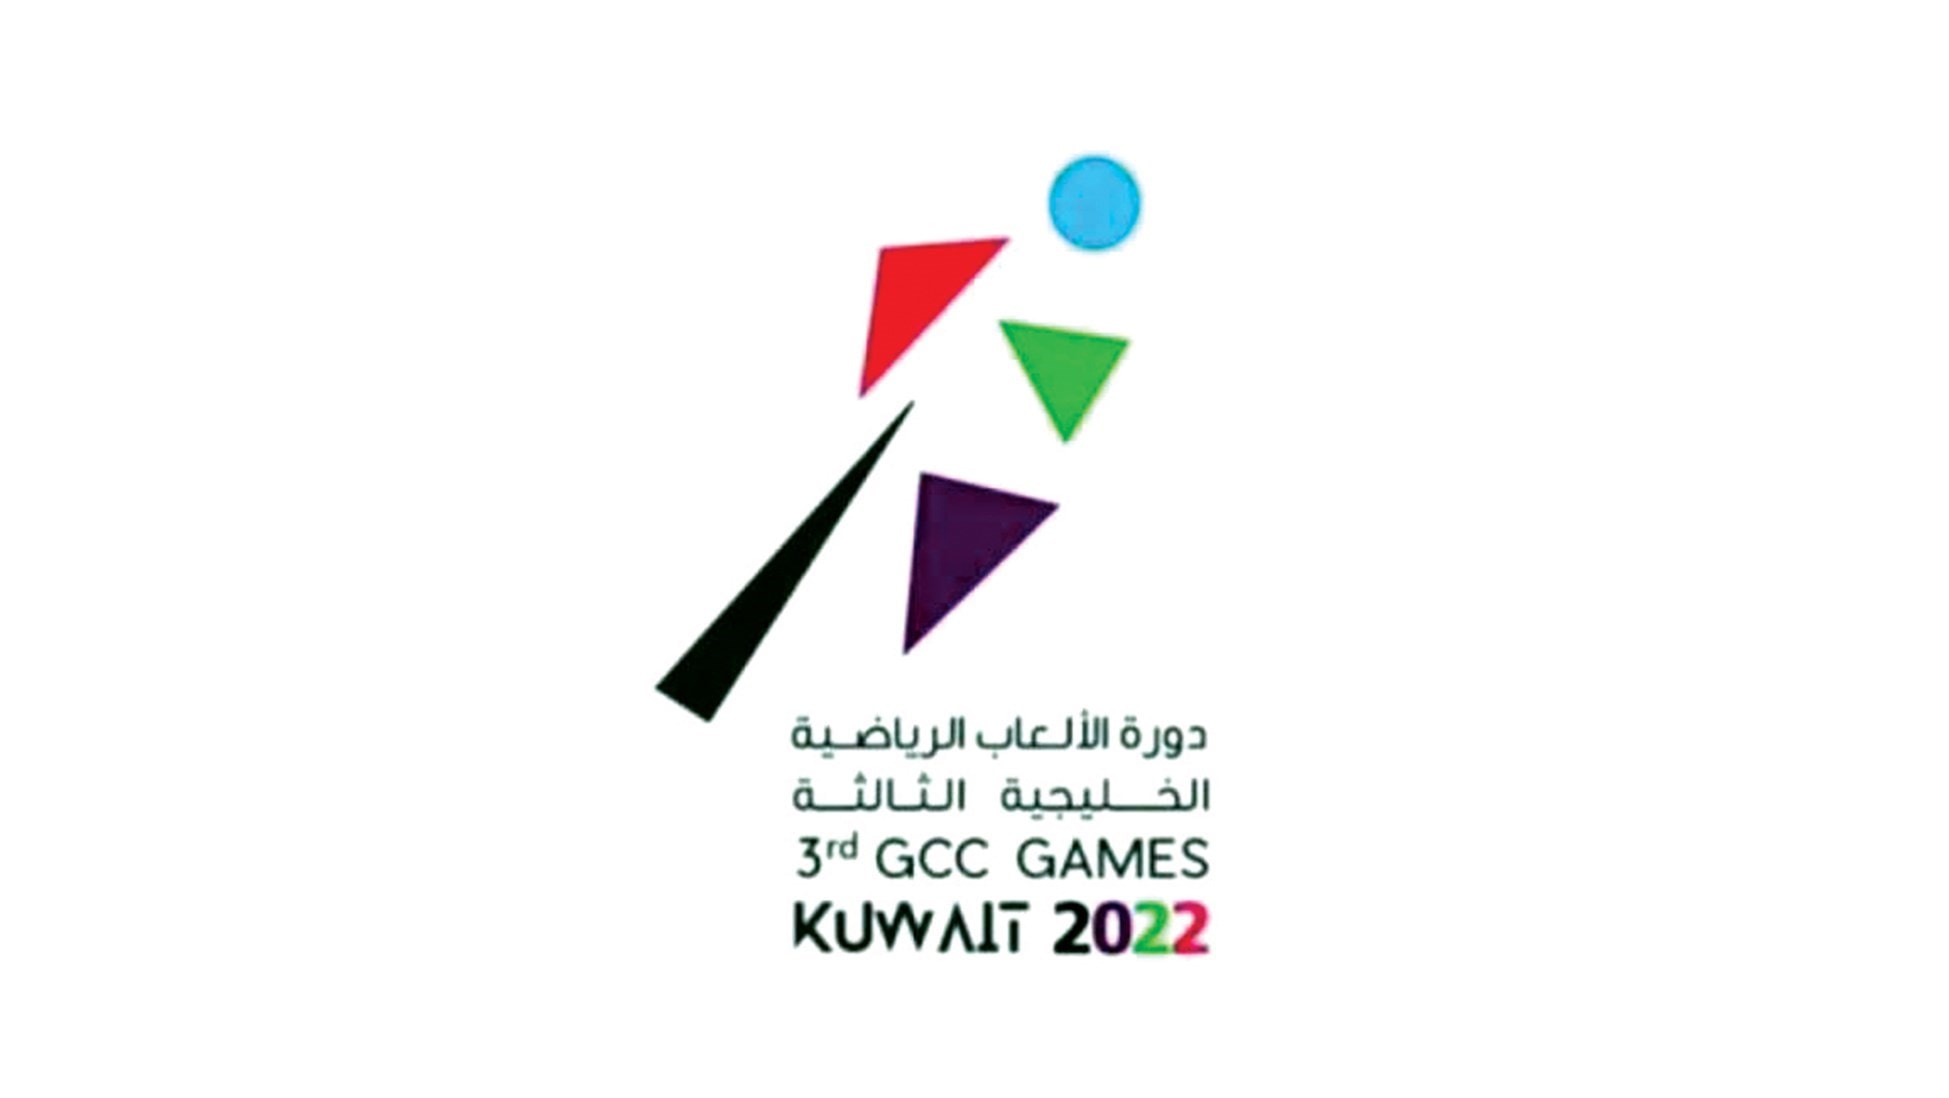 الألعاب الخليجية الثالثة الكويت 2022